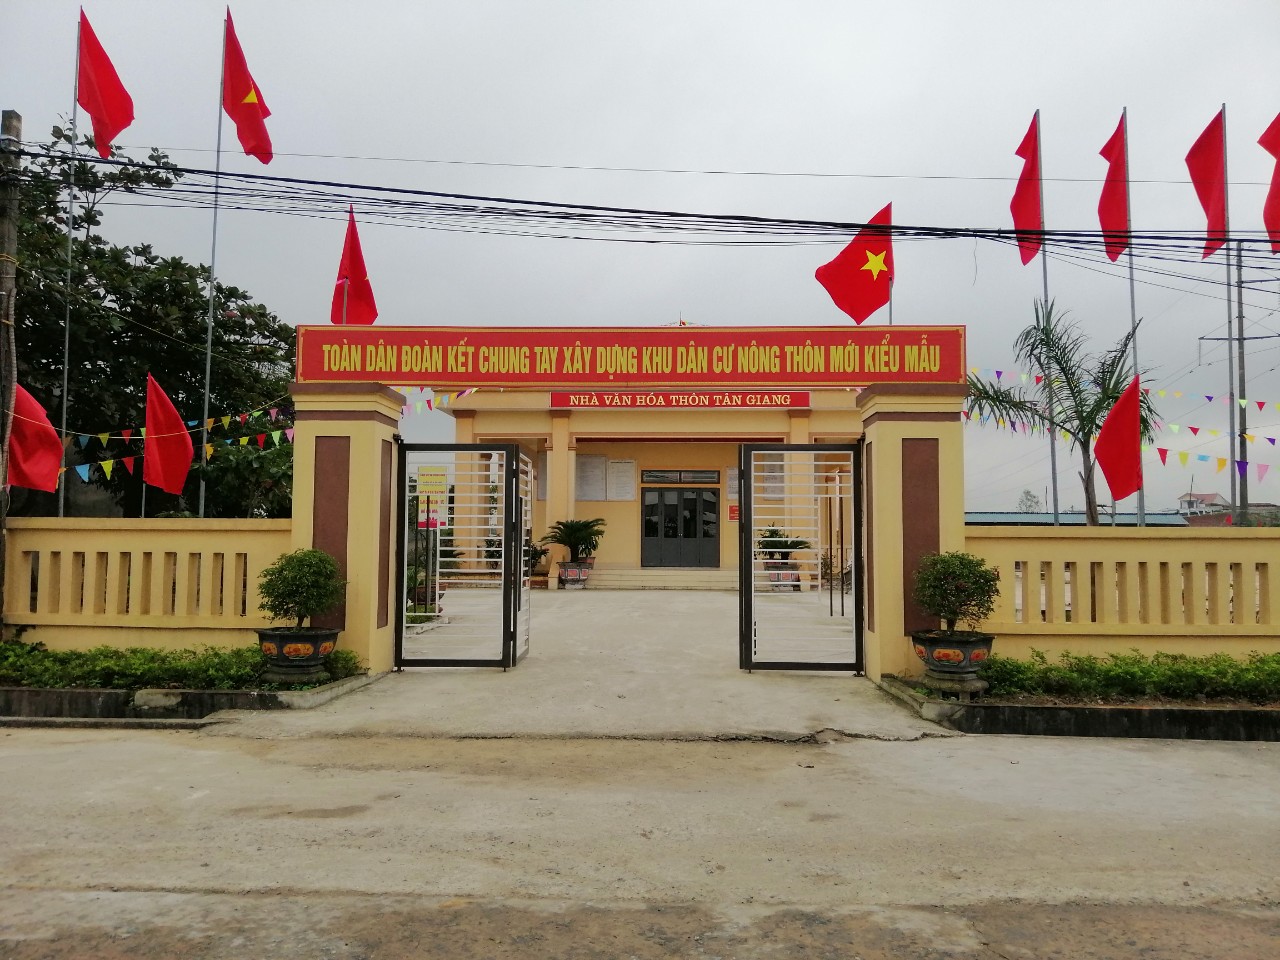 Nhà văn hóa thôn Tân Giang